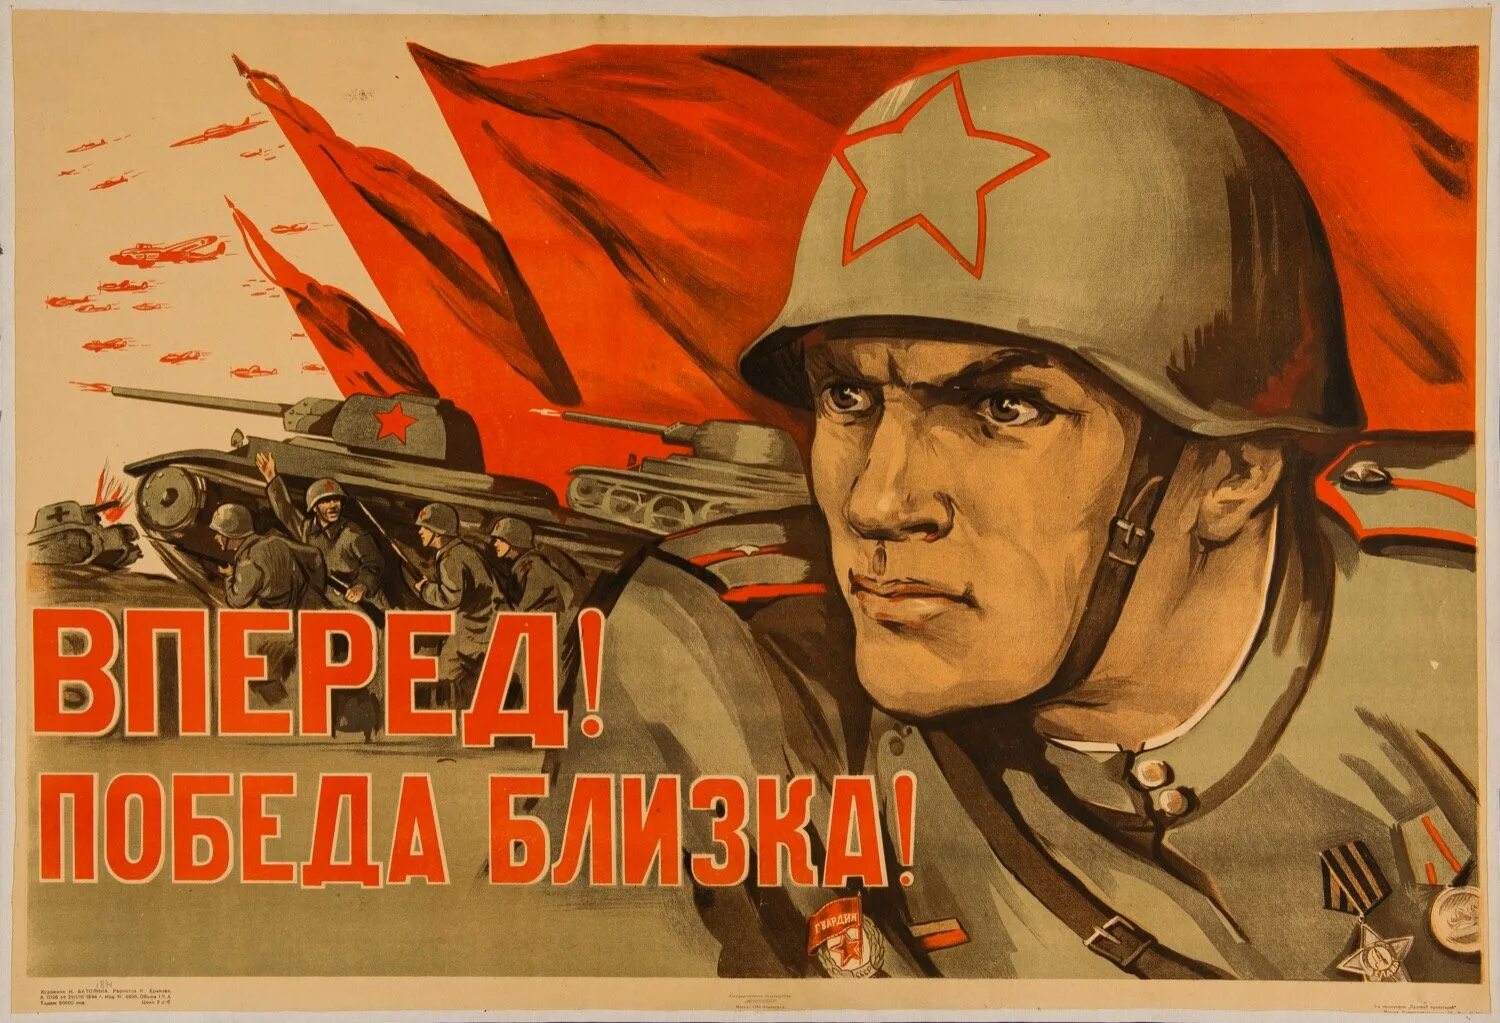 Будет сильная победа. Плакаты Великой Отечественной войны. Плакаты в годы Великой Отечественной войны. Вперед победа близка плакат.